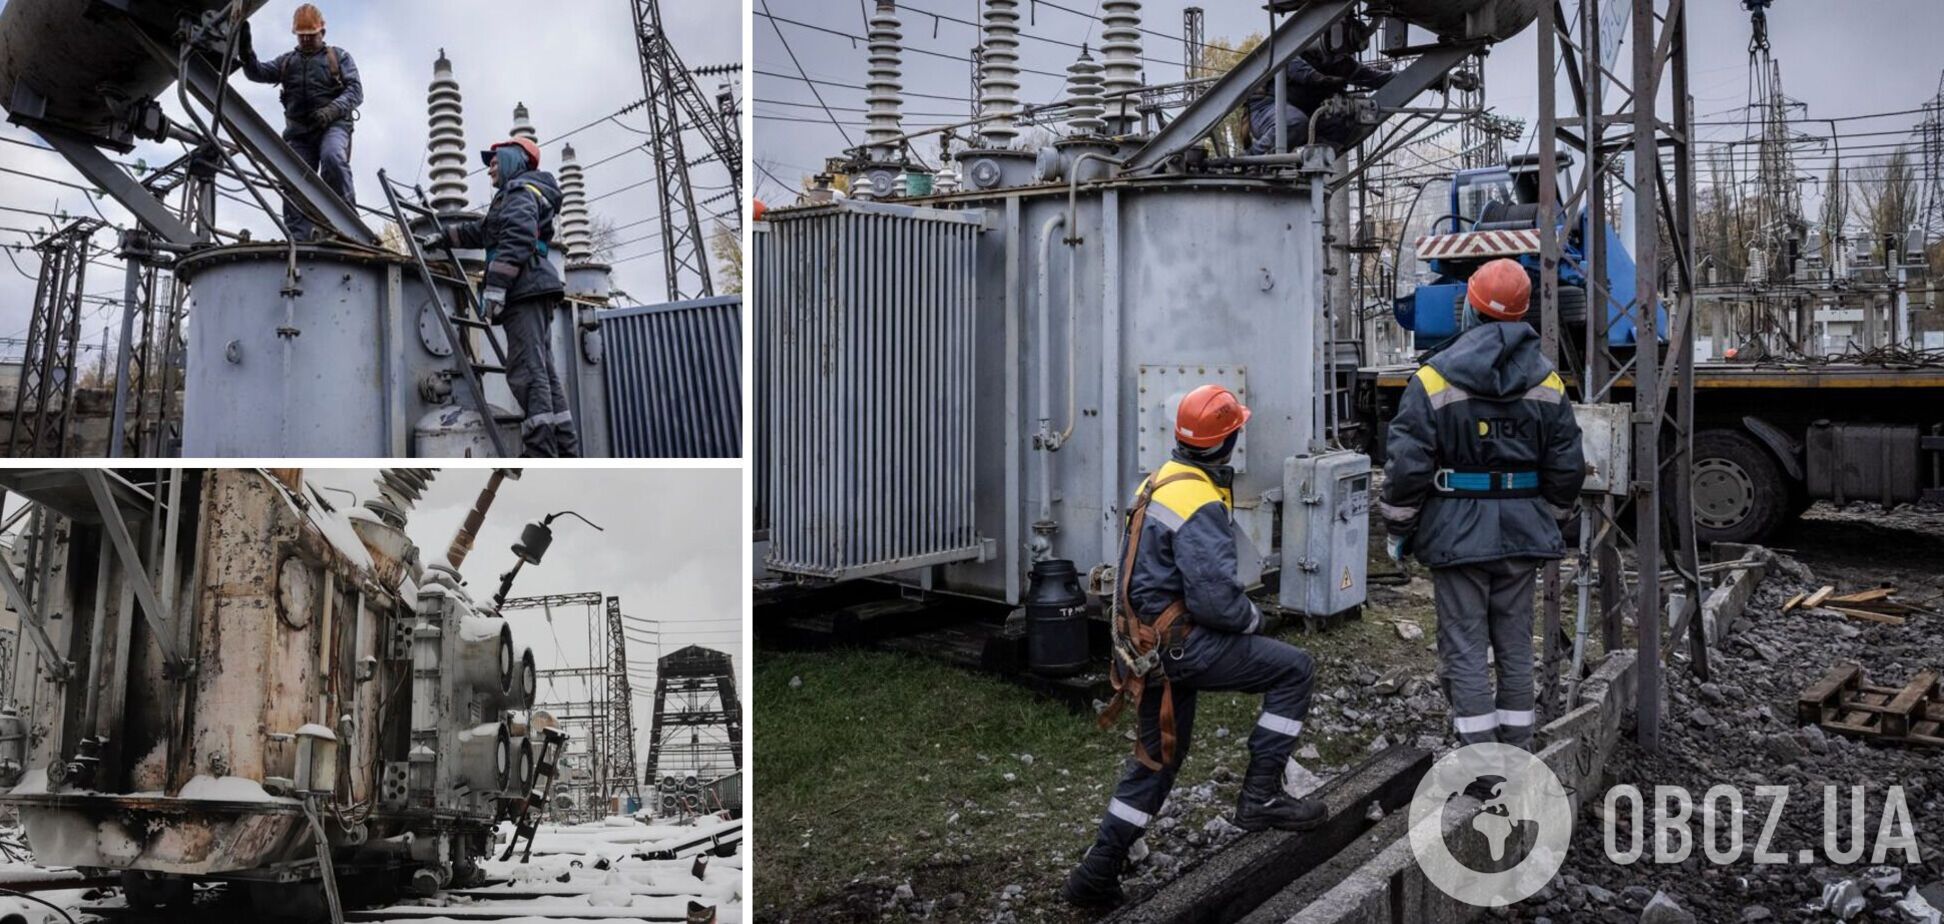 Наступна зима може бути ще складнішою, якщо Україна не залучатиме кошти для ремонту енергосистеми, – ексміністр